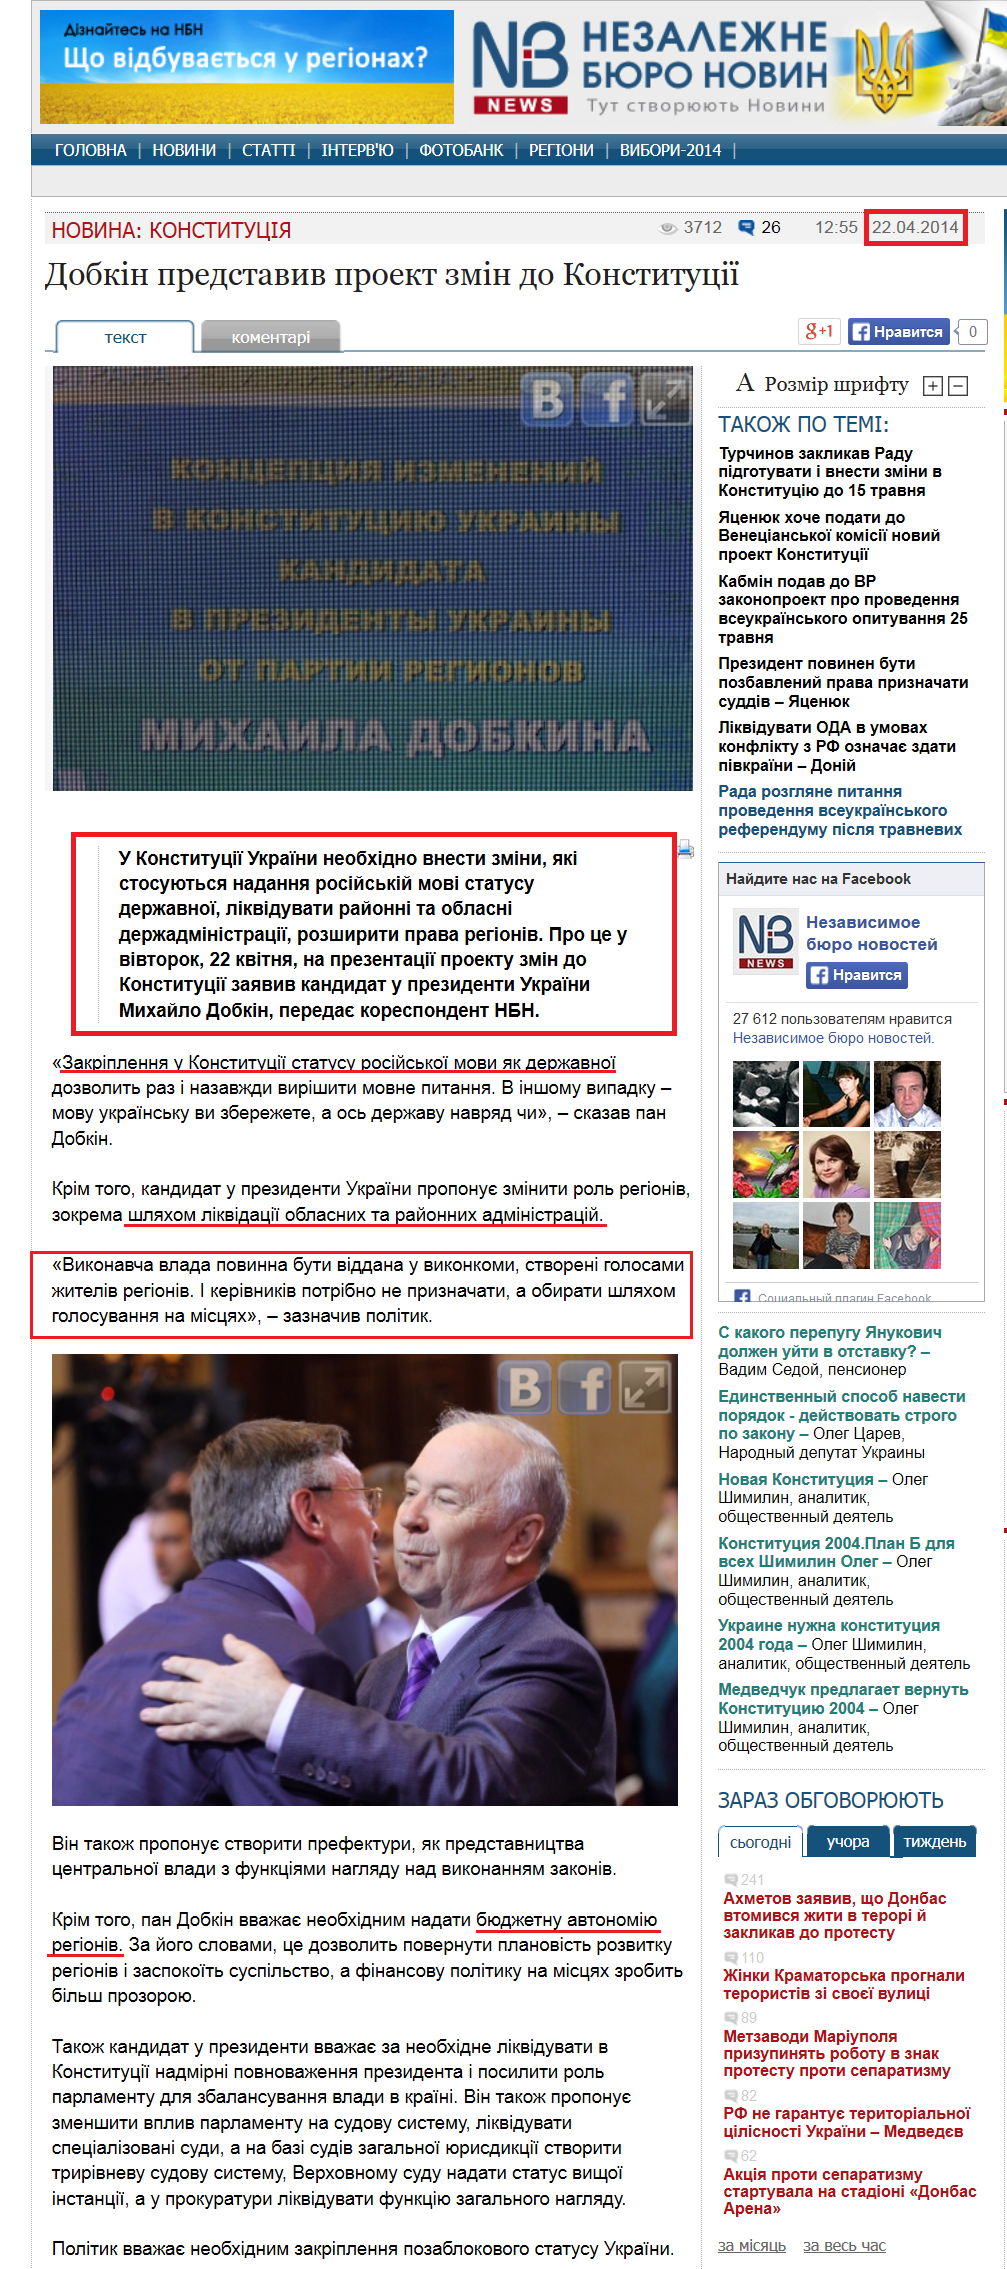 http://nbnews.com.ua/ua/news/119233/